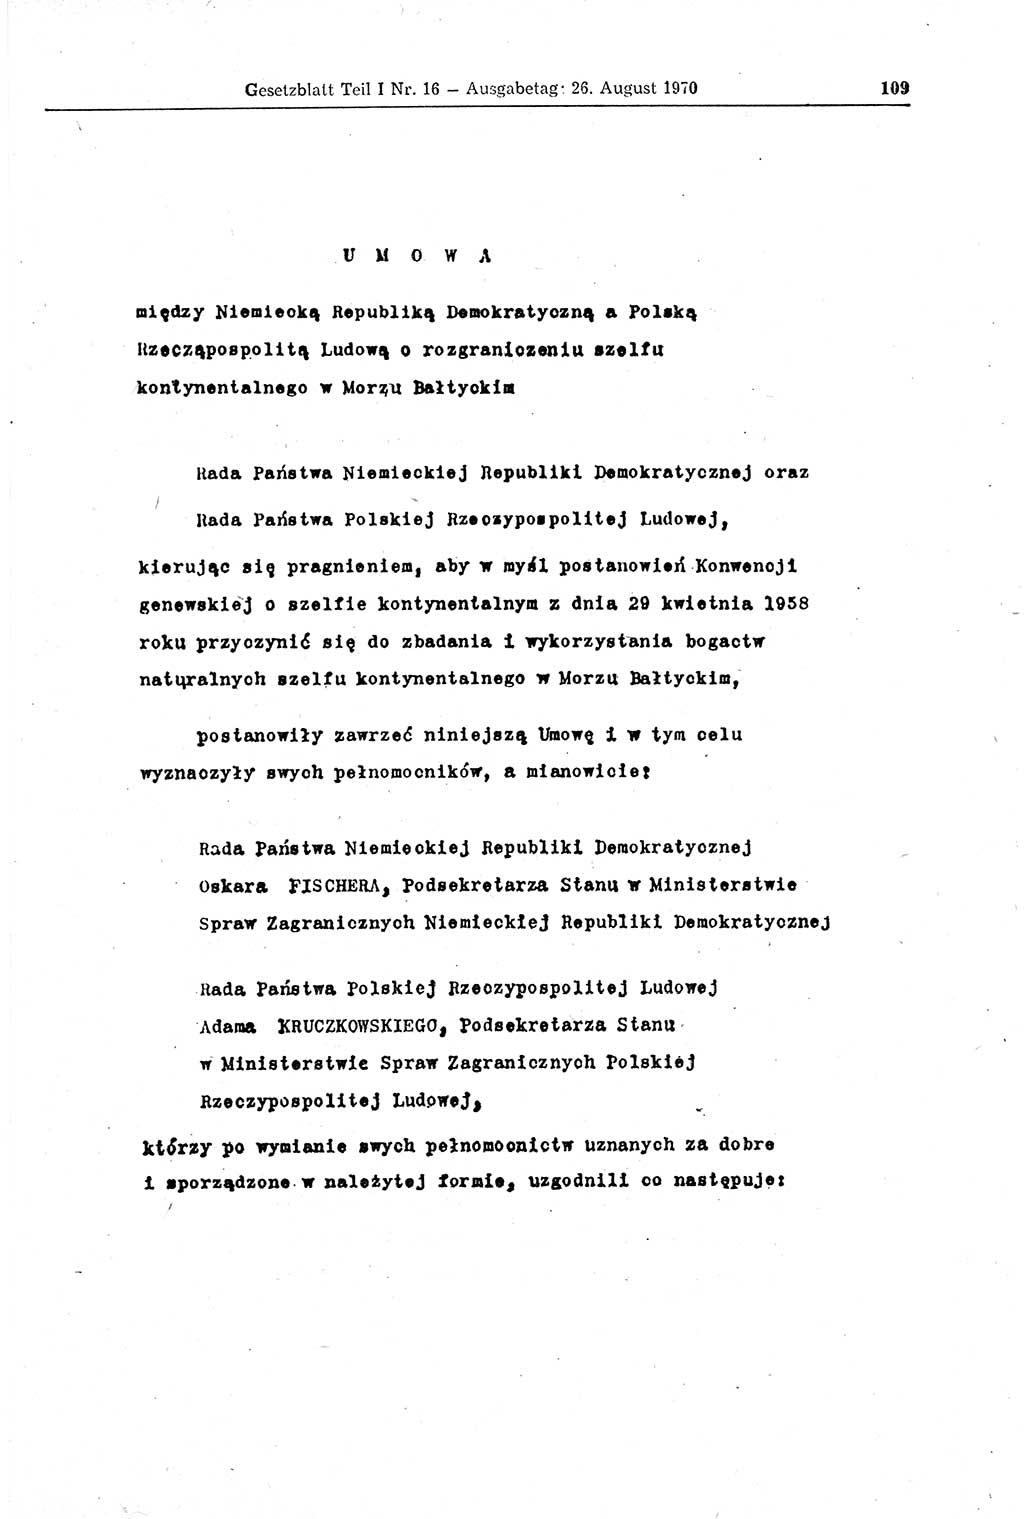 Gesetzblatt (GBl.) der Deutschen Demokratischen Republik (DDR) Teil Ⅰ 1970, Seite 109 (GBl. DDR Ⅰ 1970, S. 109)